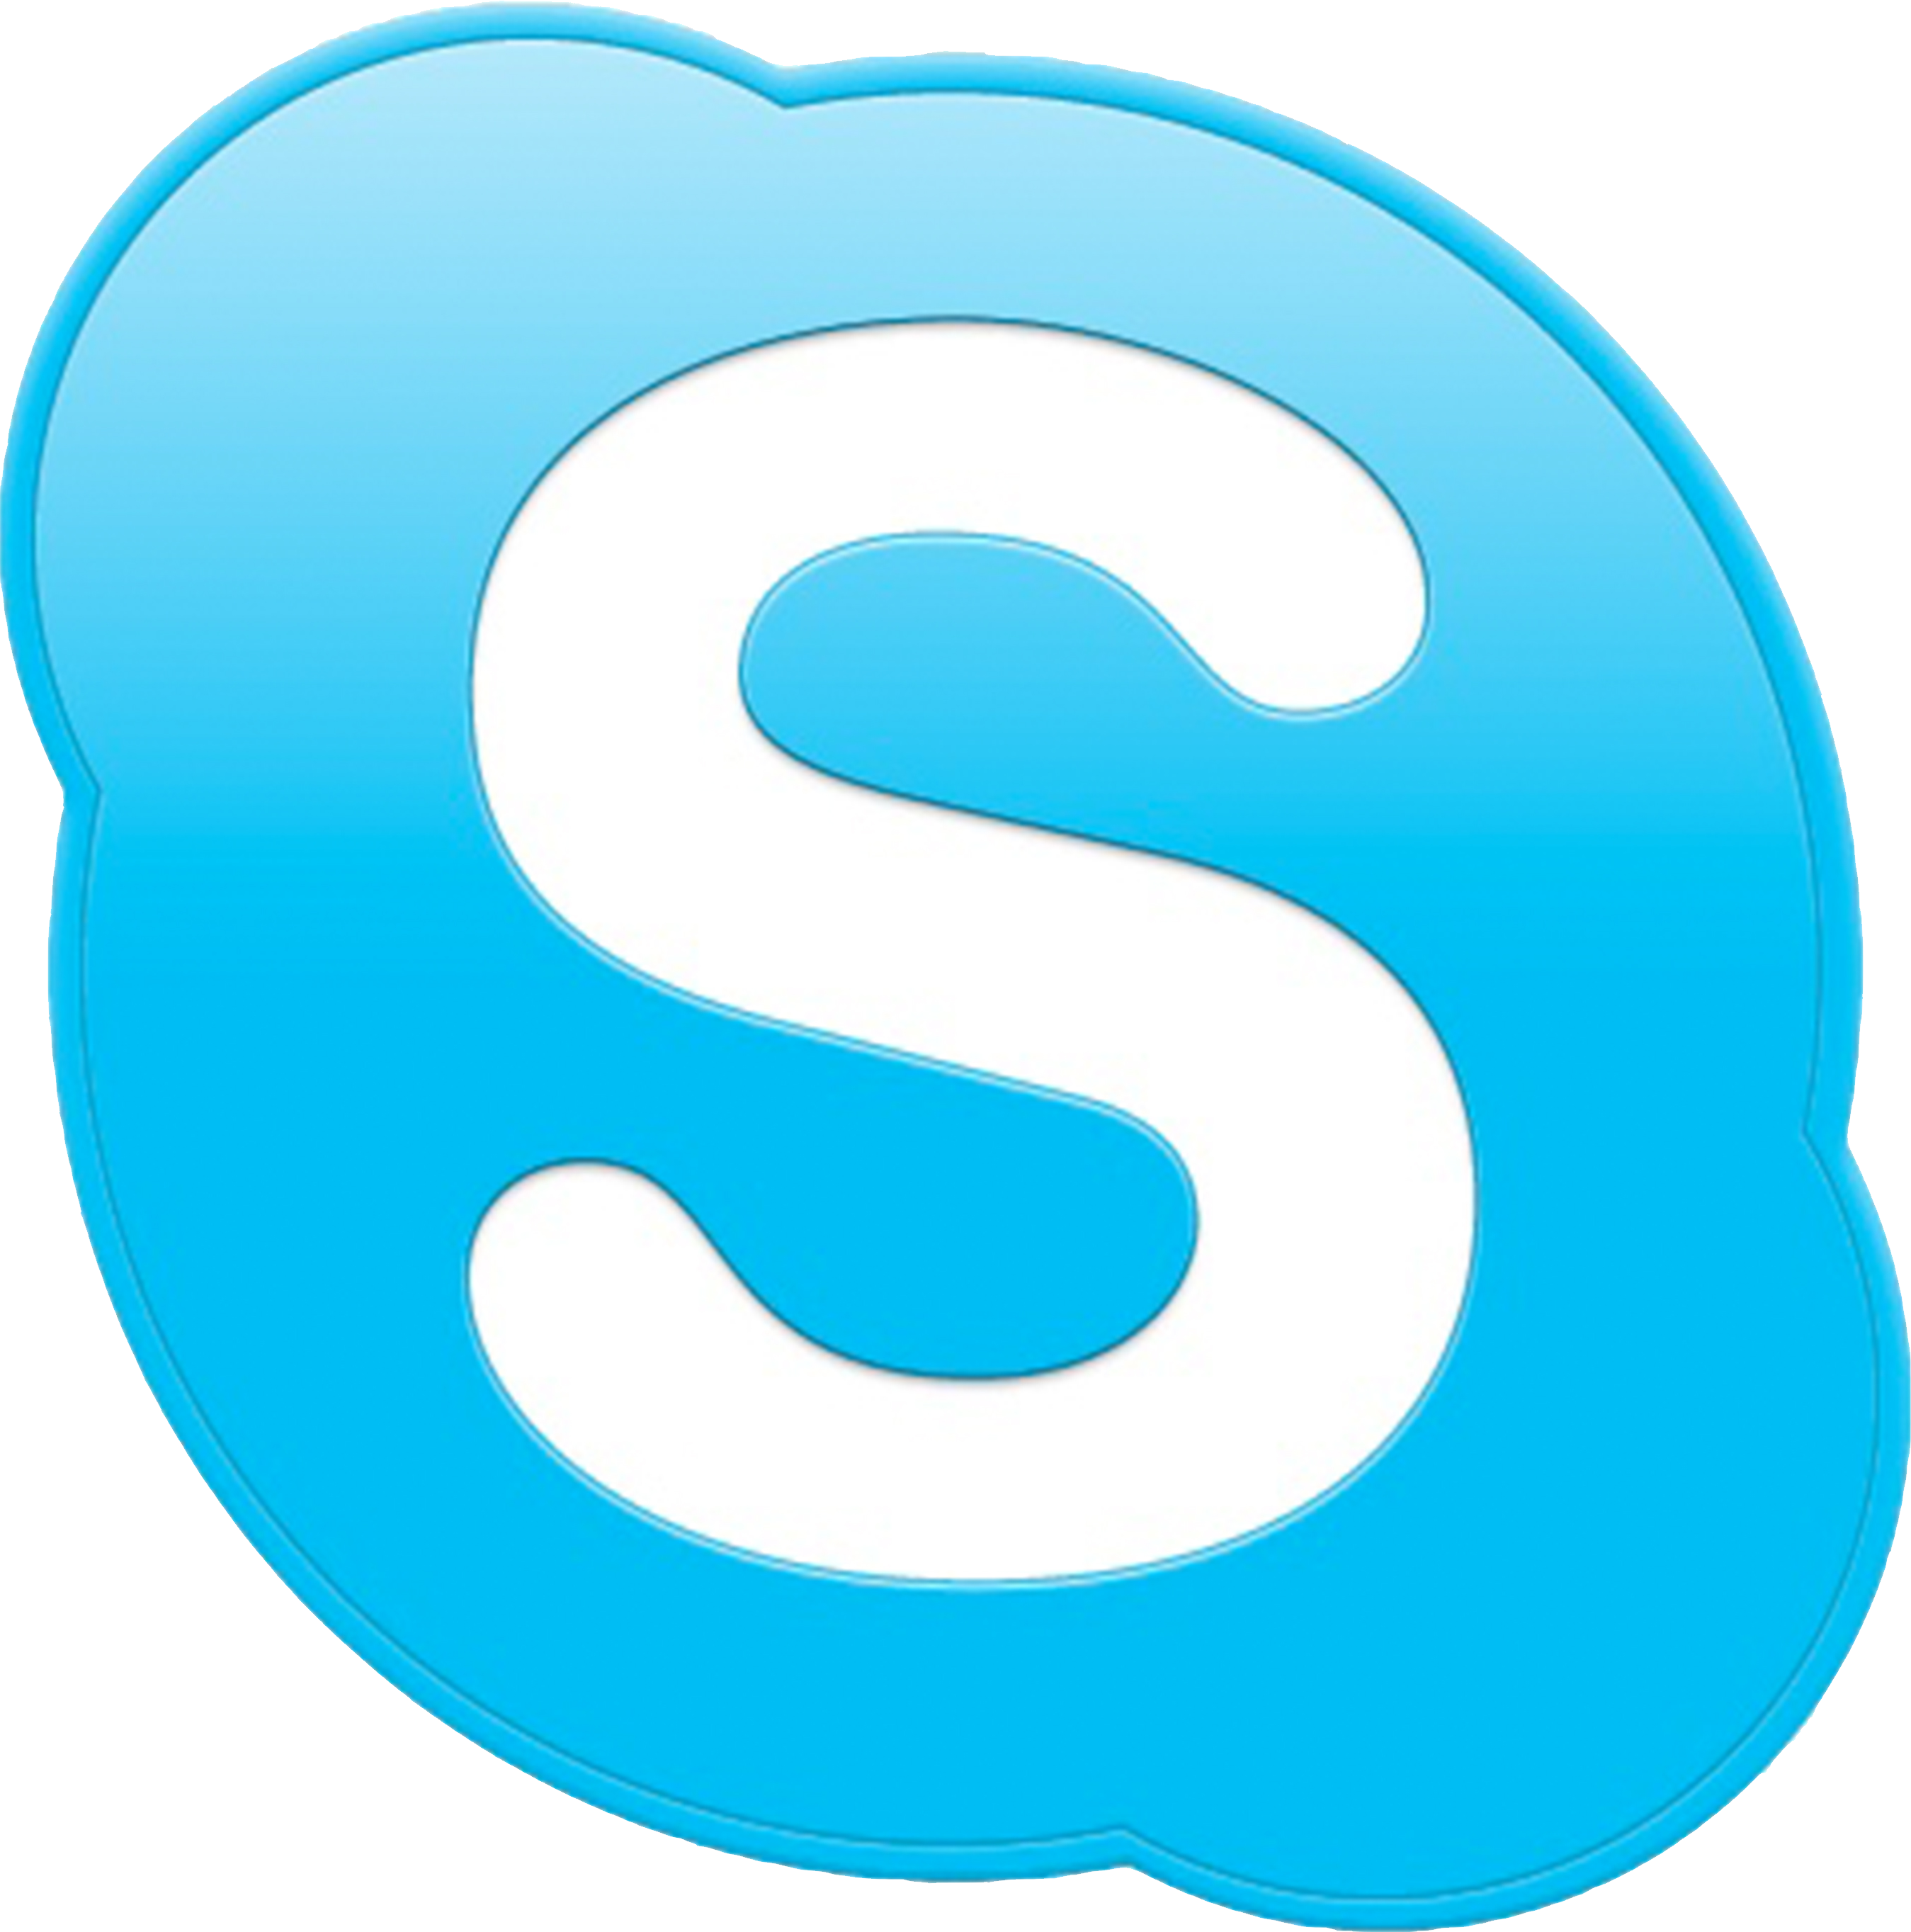 Download Skype 2017 - Skype L